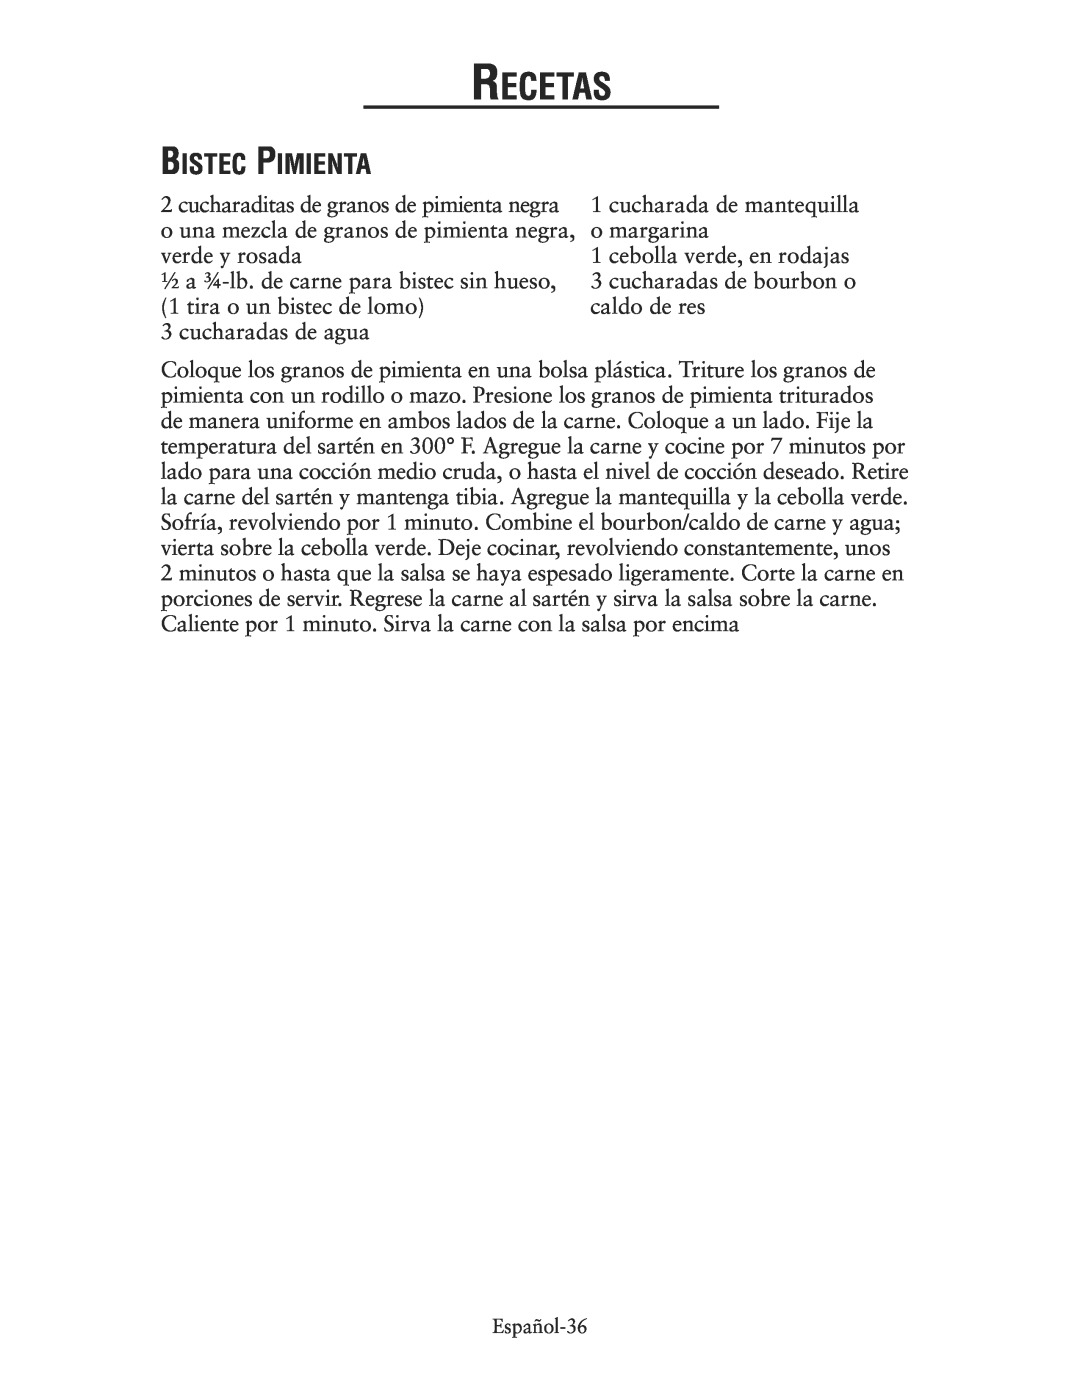 Oster CKSTSKRM20 user manual Bistec Pimienta, Recetas 